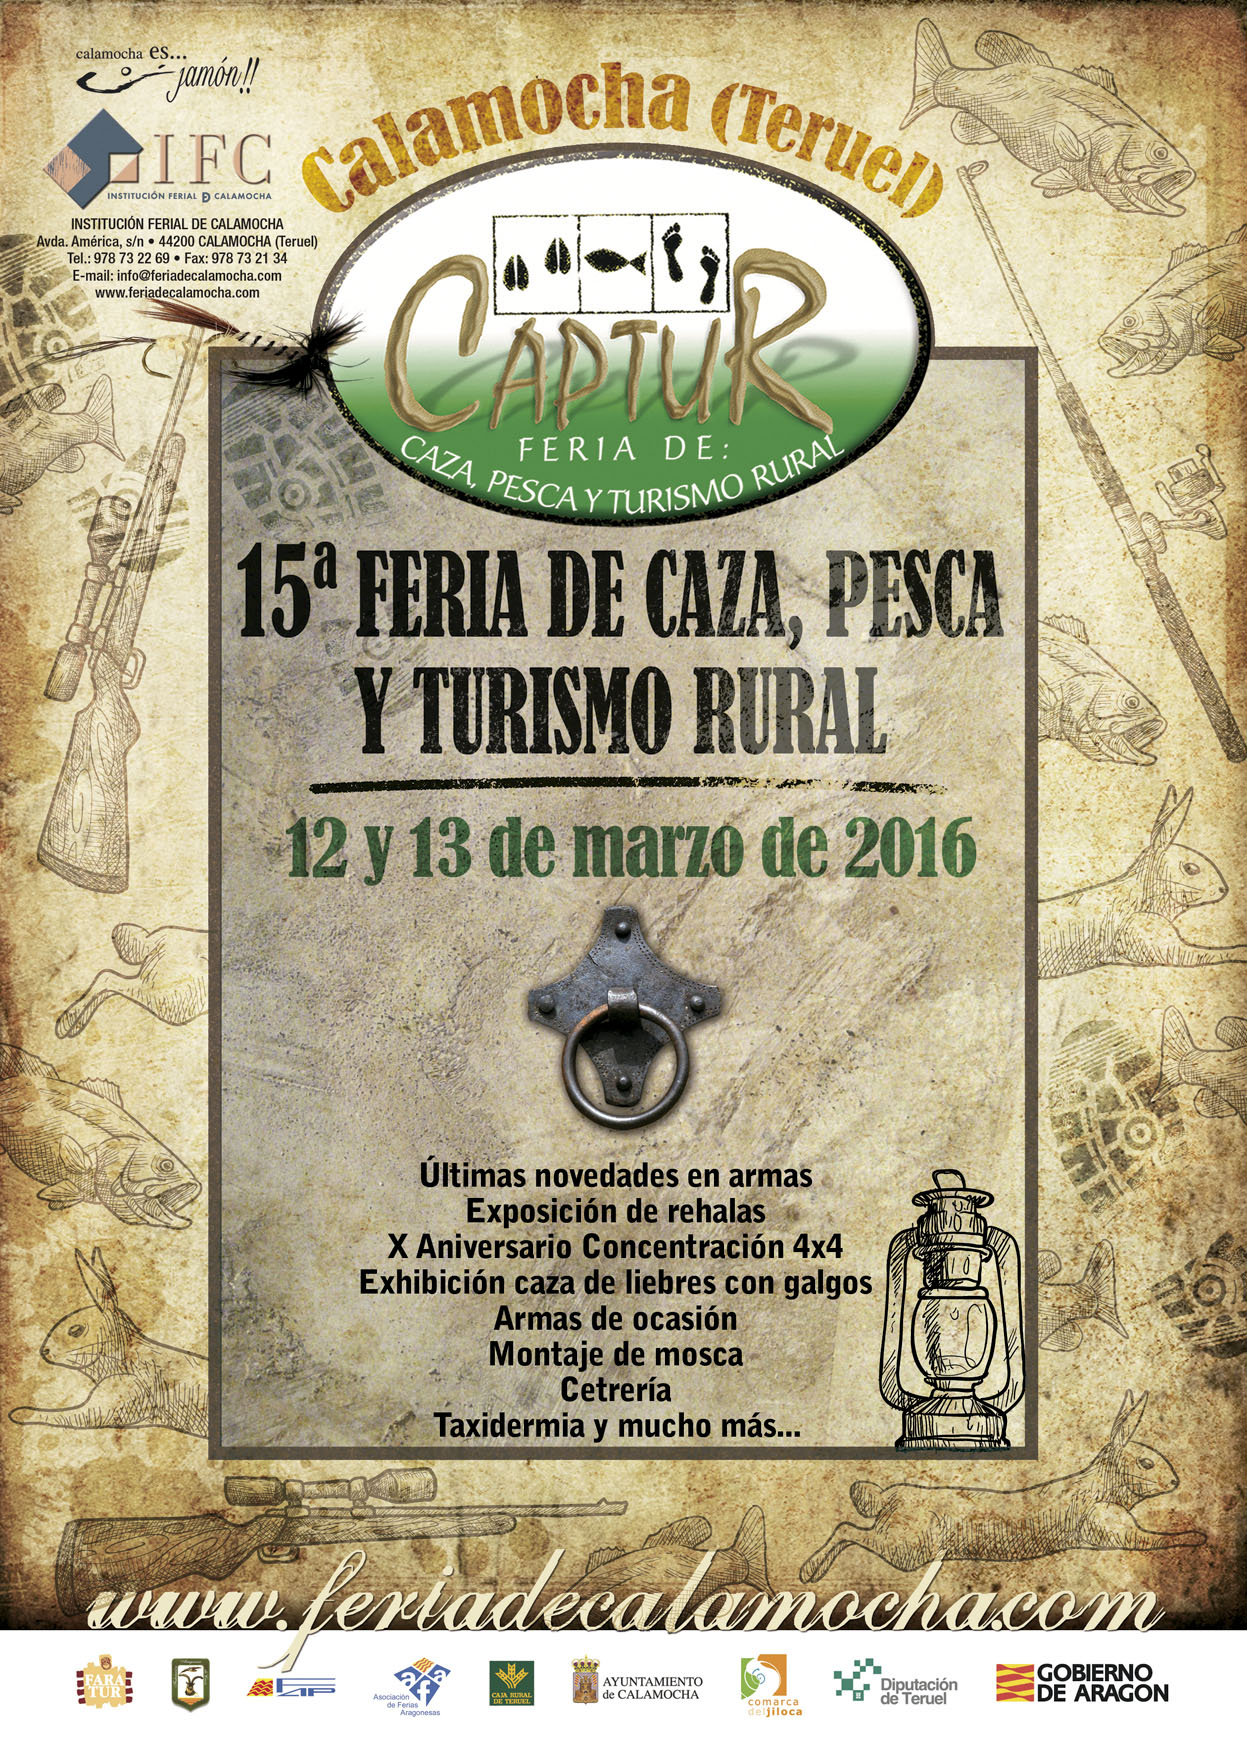 XV Feria de Caza,Pesca y Turismo Rural Captur de Calamocha,Teruel.12 y 13 de Marzo del 2016.